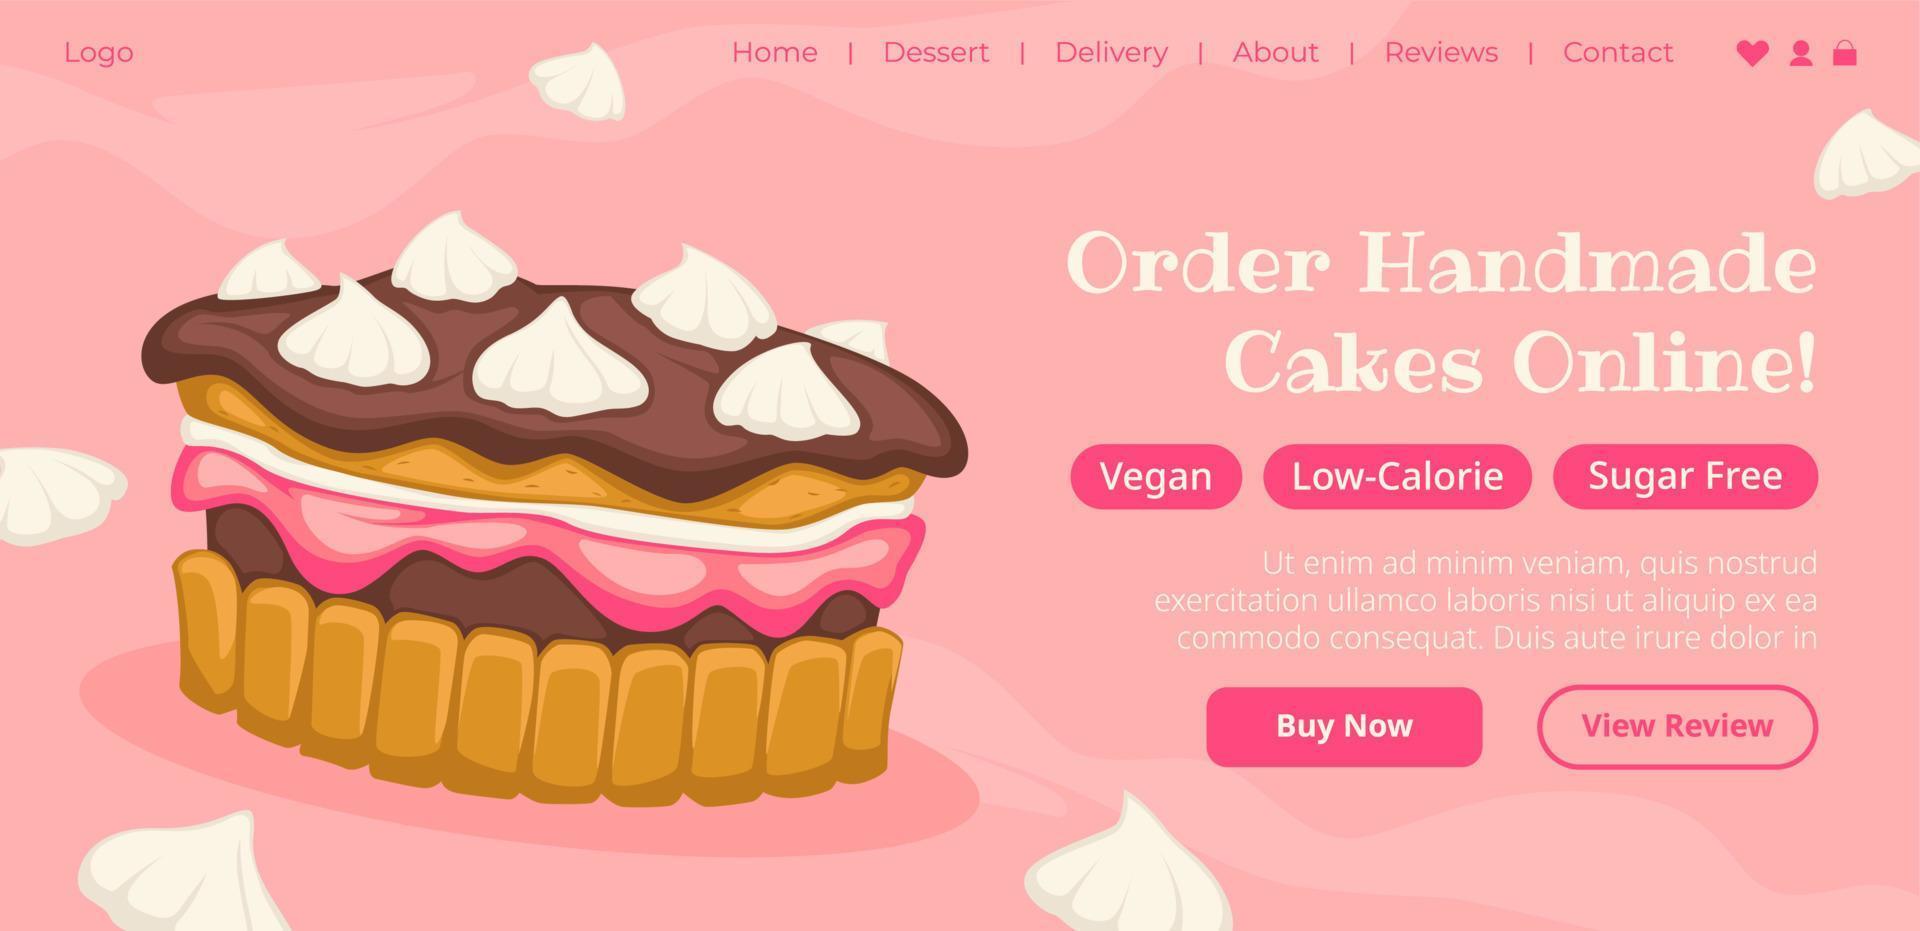 Order homemade cakes online, tasty dessert web vector